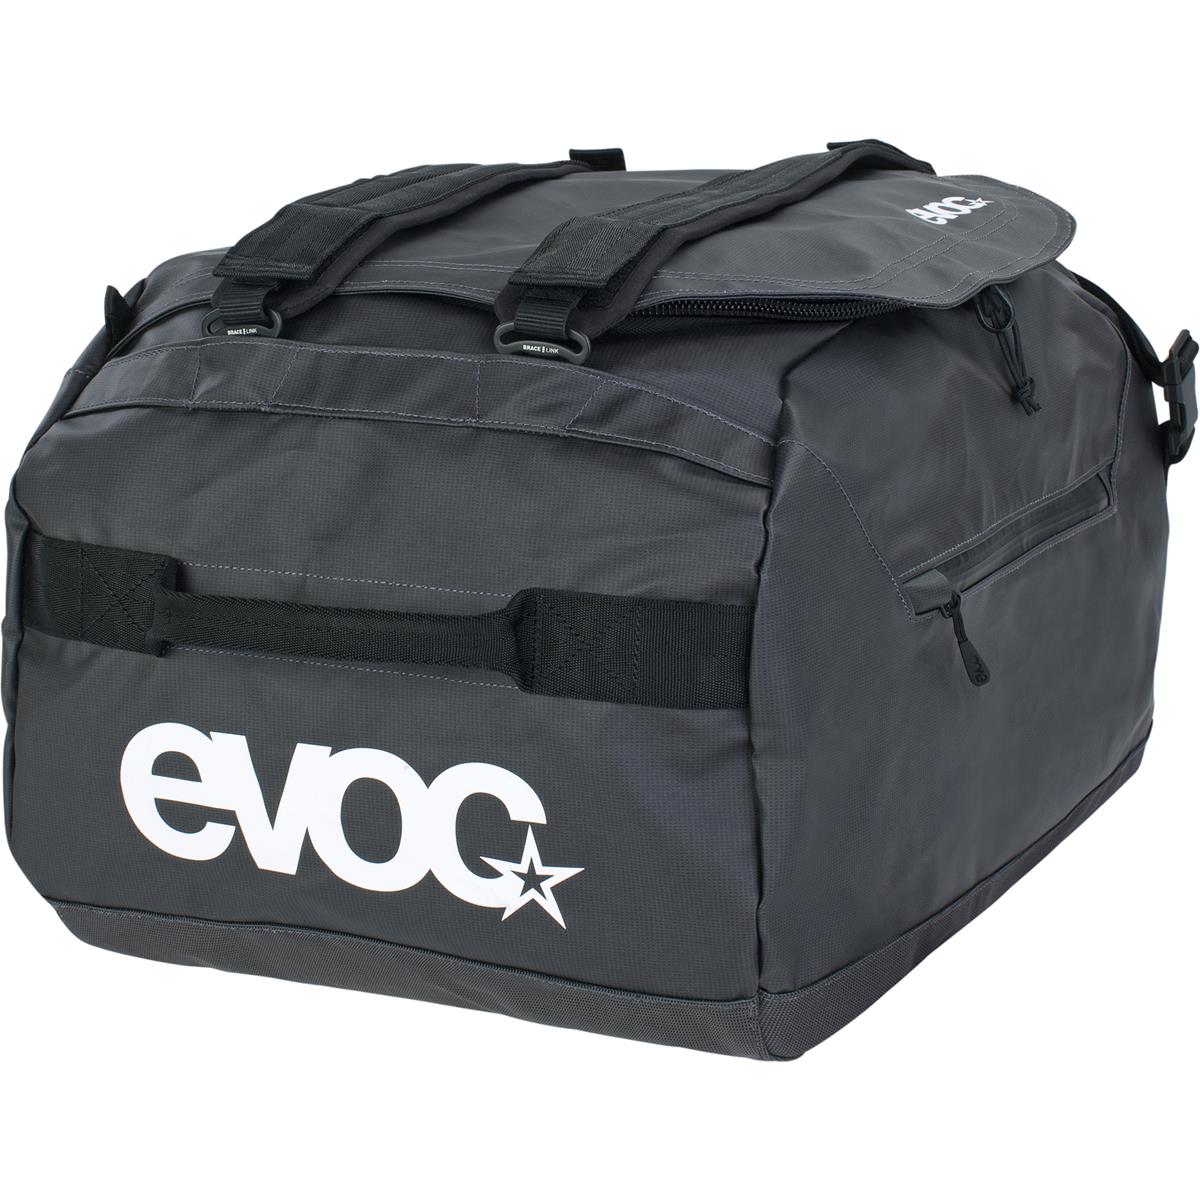 Evoc Borsone Duffle Bag 40 Carbon Grigio/Nero